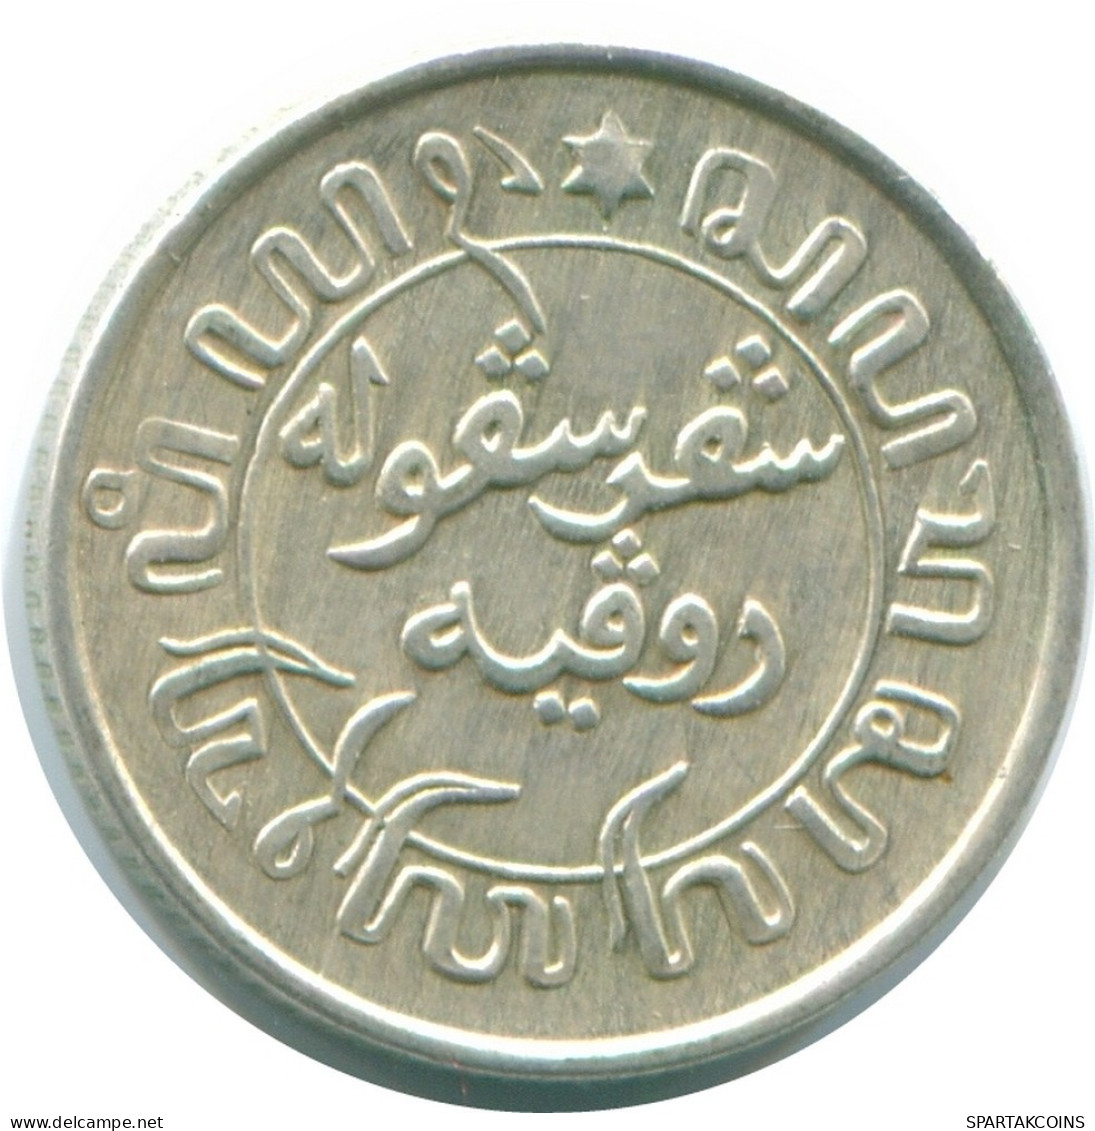 1/10 GULDEN 1942 NETHERLANDS EAST INDIES SILVER Colonial Coin #NL13891.3.U.A - Niederländisch-Indien